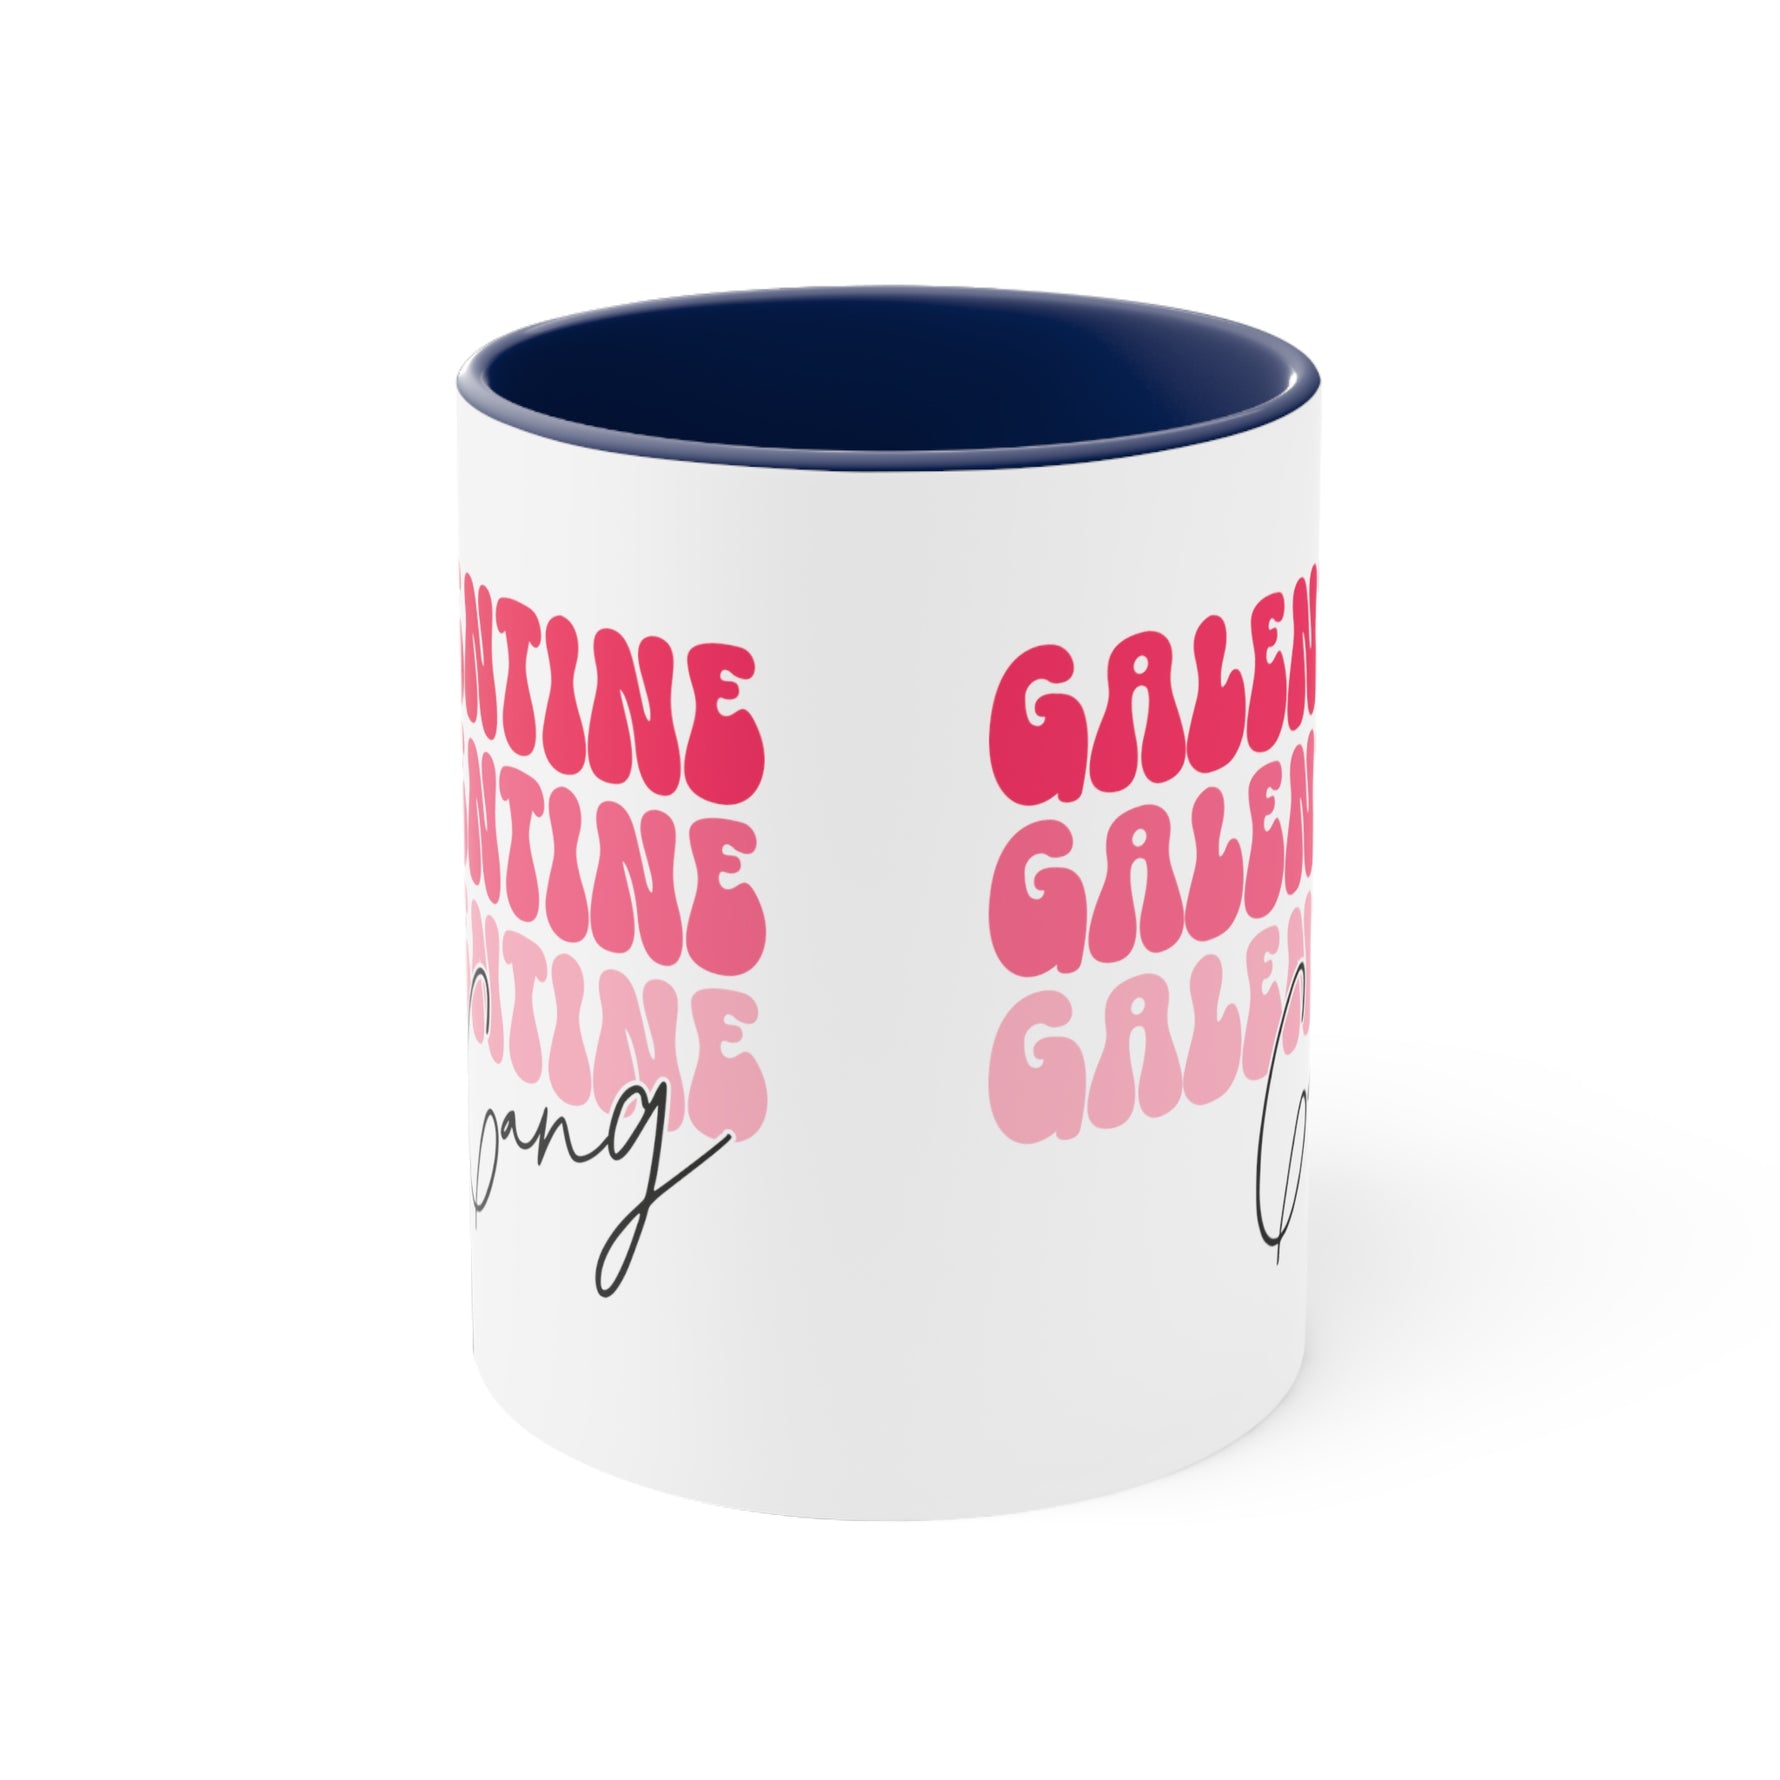 Galentine Gang 11oz Coffee Mug-Ashley&#39;s Artistries